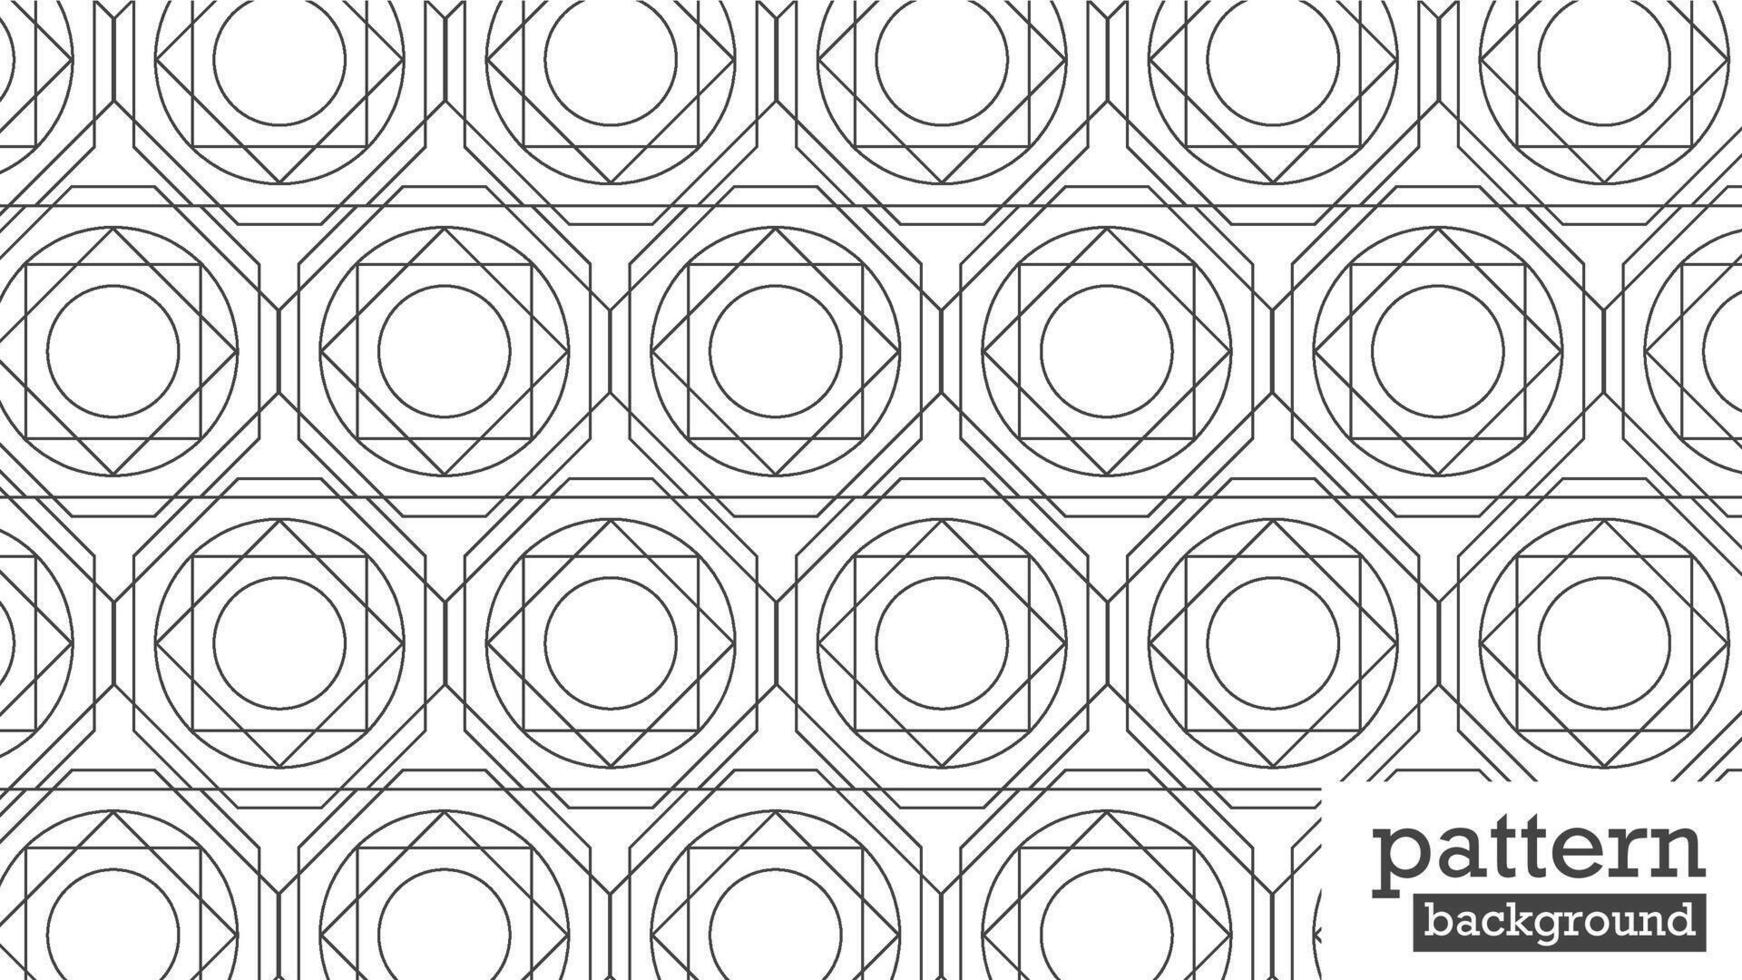 detta är en geometrisk, abstrakt linje sömlös mönster i svart på en vit bakgrund. illustration. svartvit och modern stil. vektor